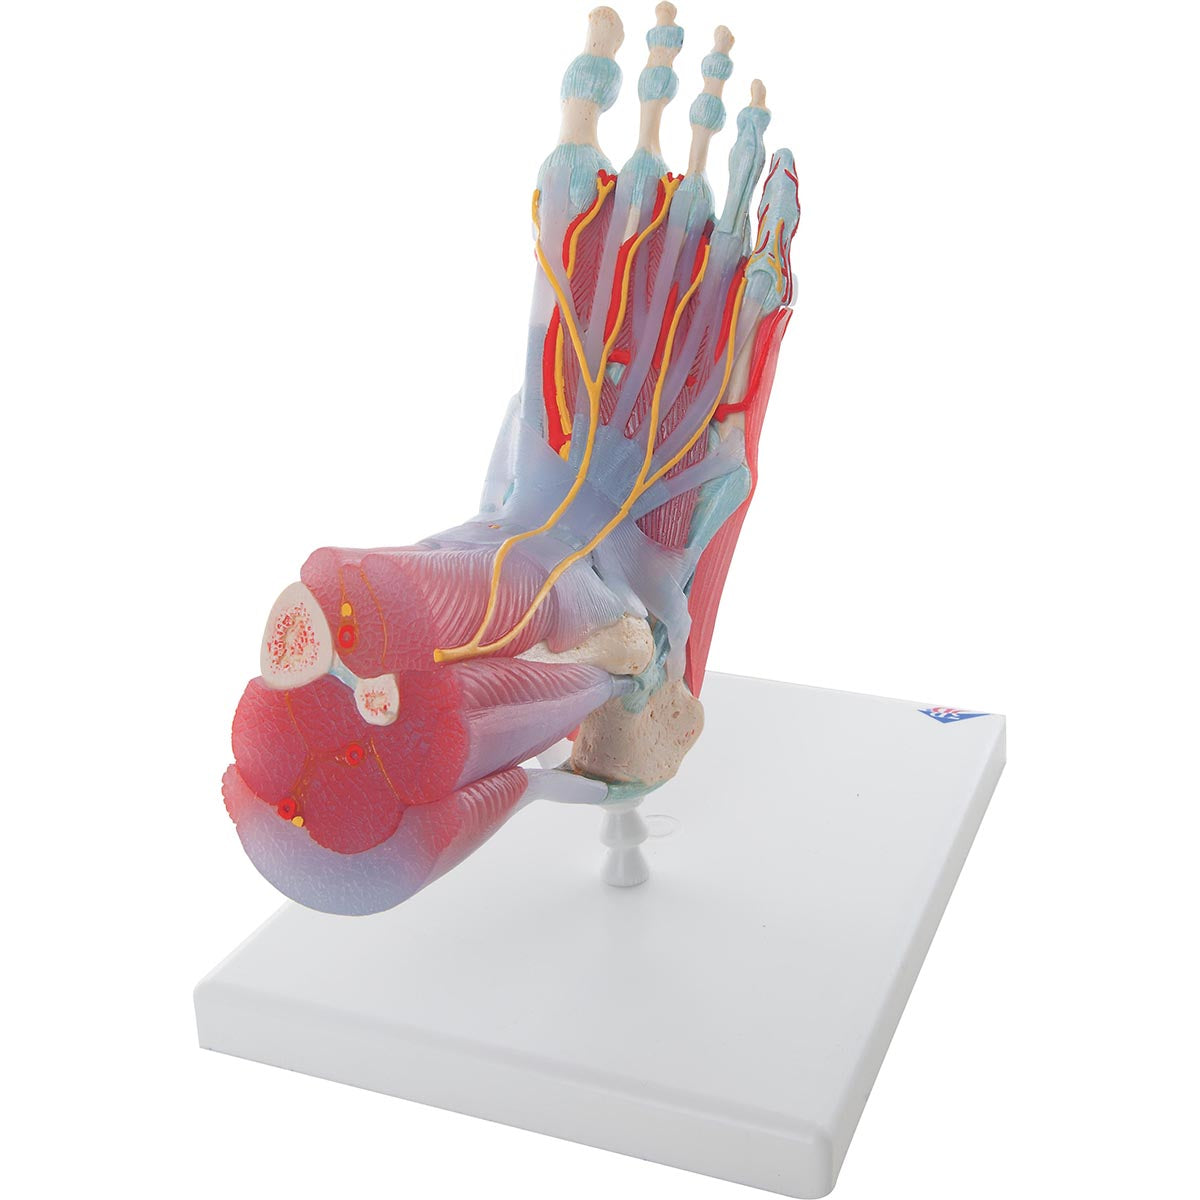 Komplet fodmodel med ledbånd, muskler, kar og nerver - kan adskilles i 6 dele